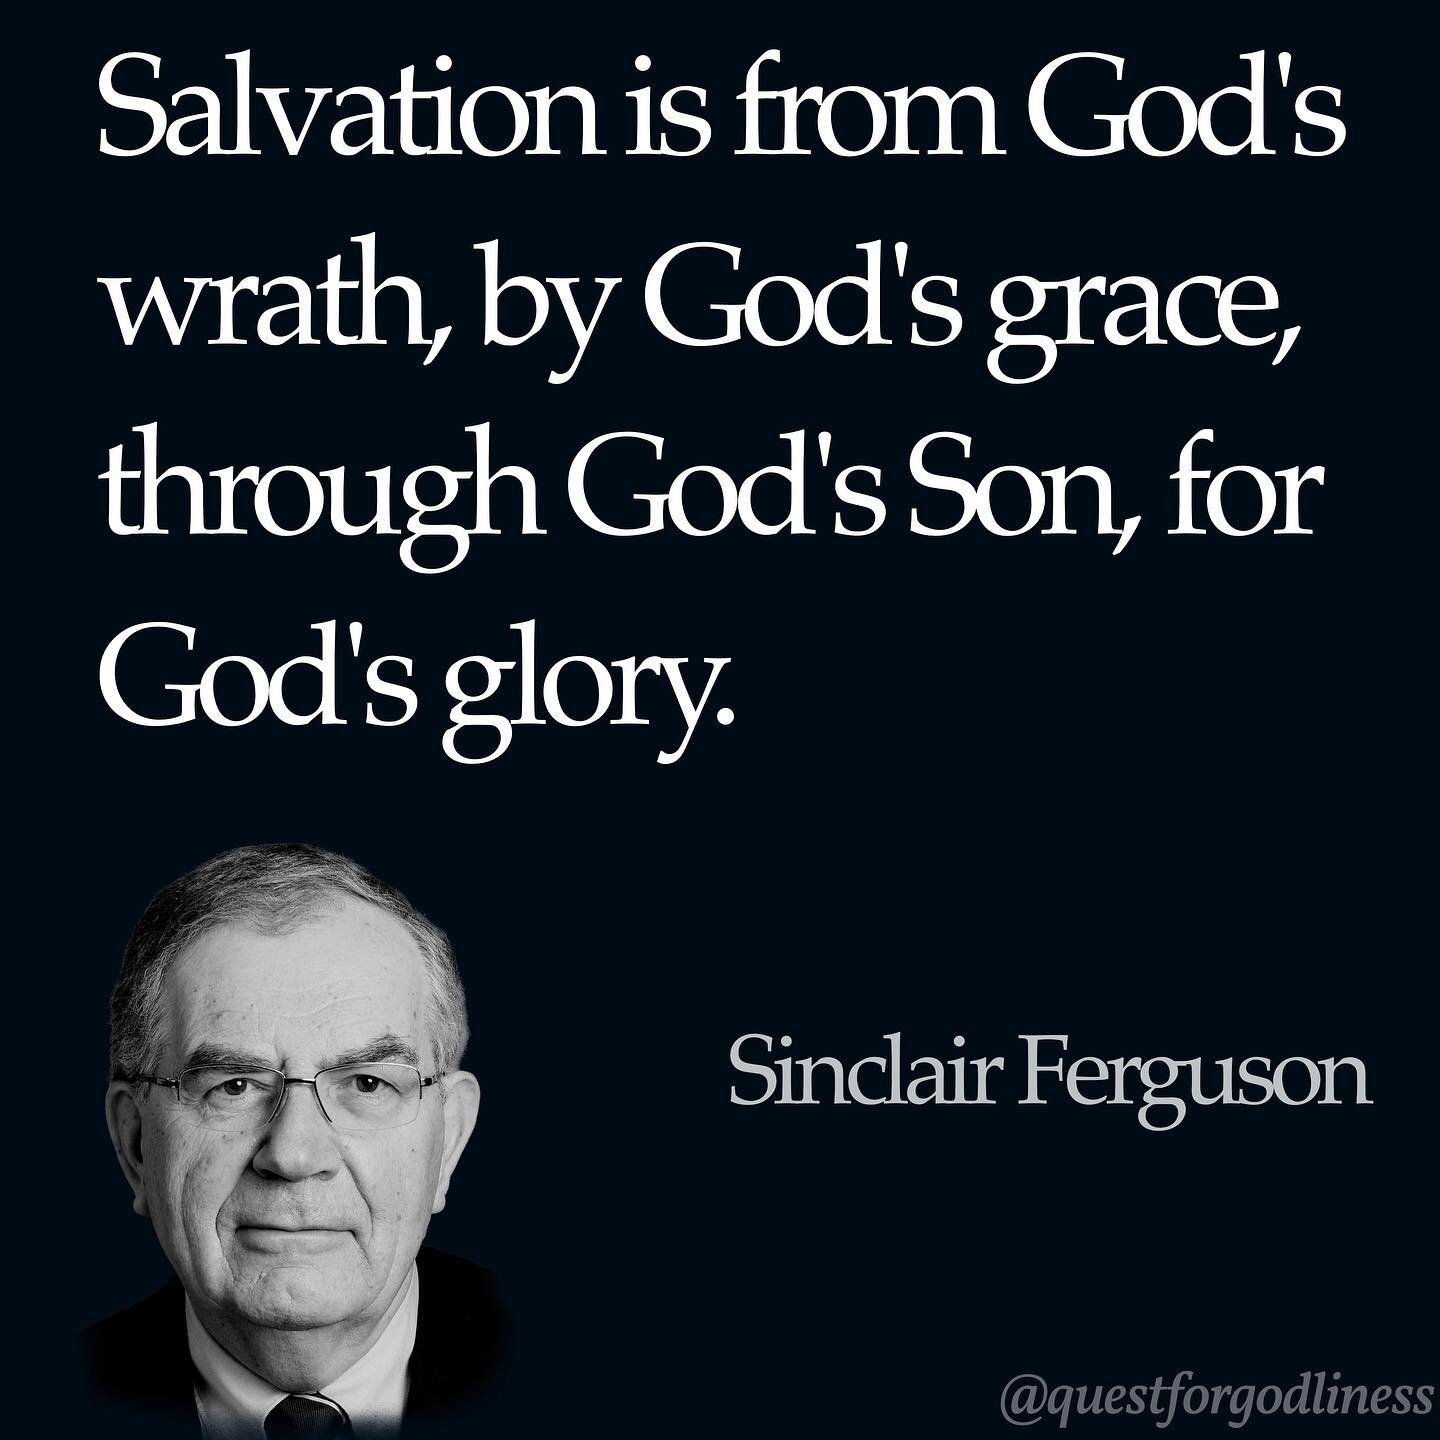 Salvation is from God's wrath, by God's grace, through God's Son, for God's glory. - Sinclair Ferguson